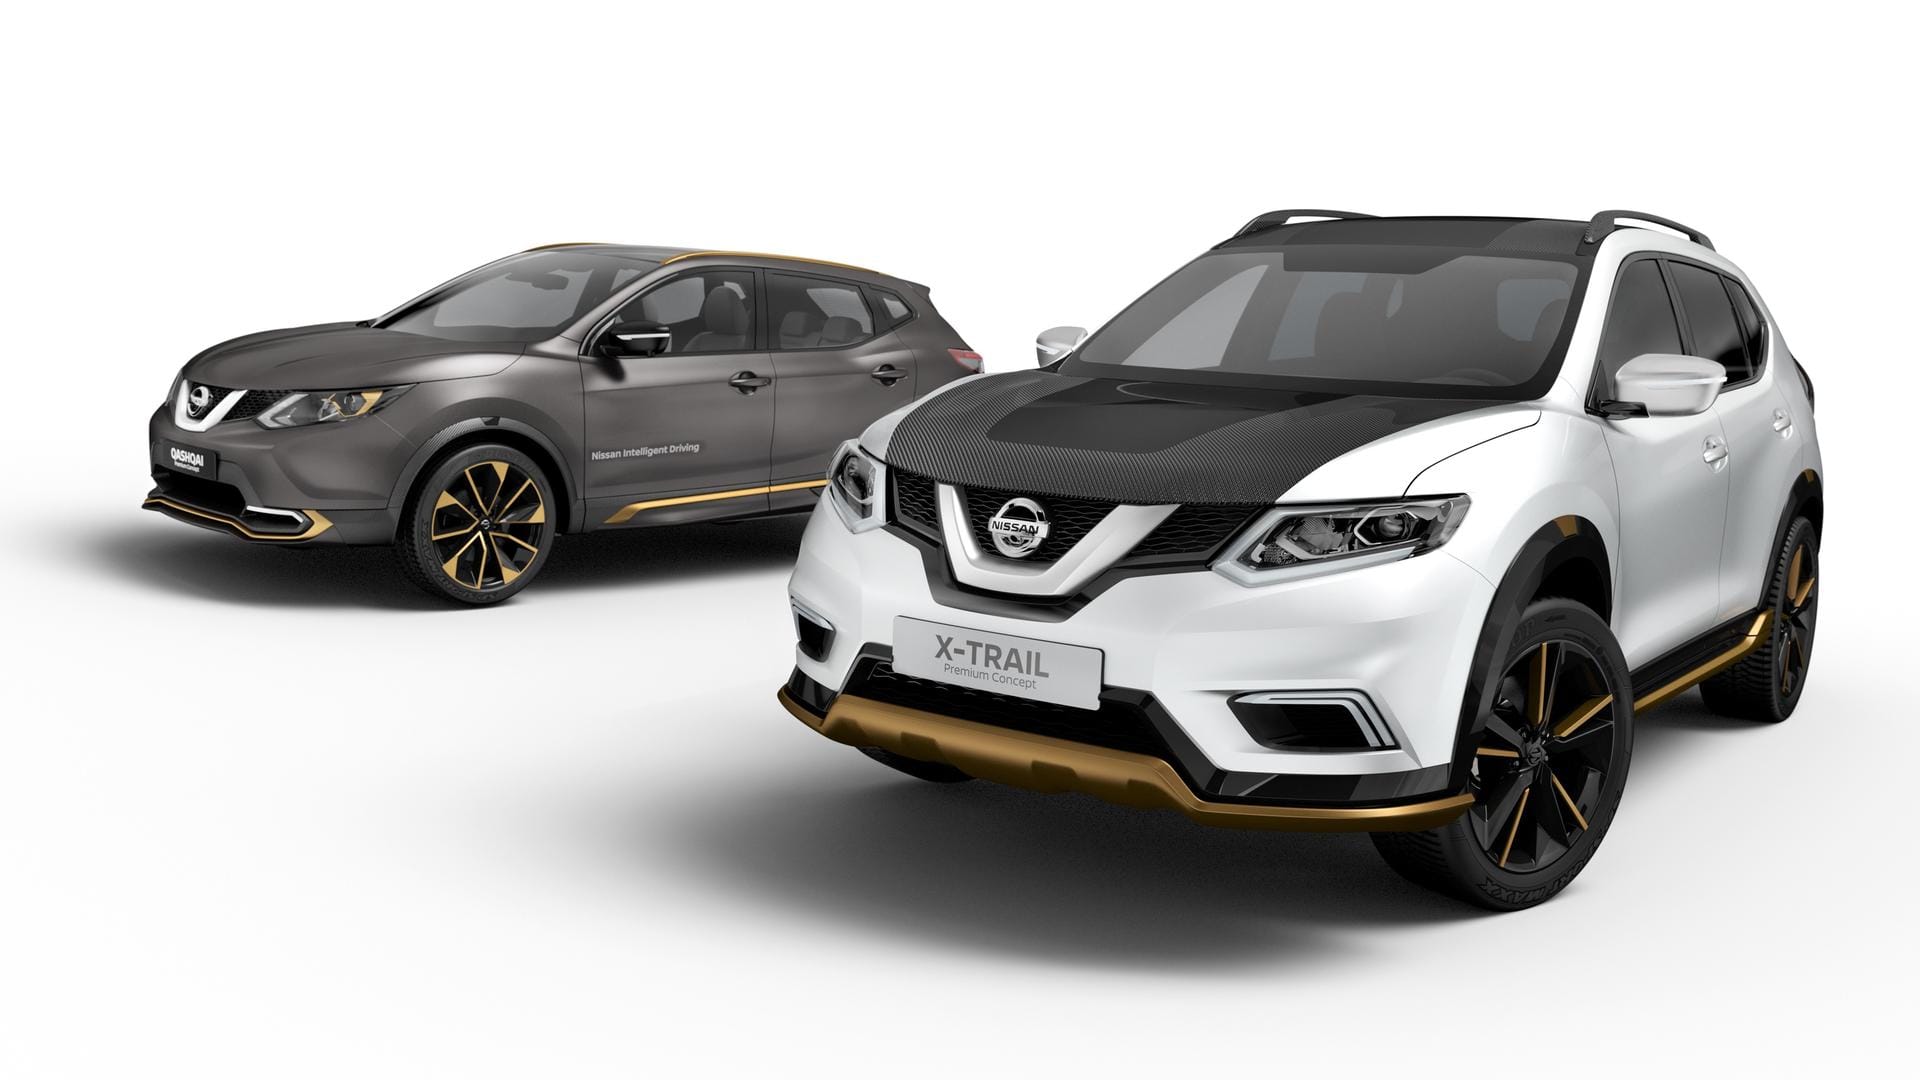 Nissan Qashqai Premium Concept und X-Trail Premium Concept - (matte) Farbspiele außen und innen.